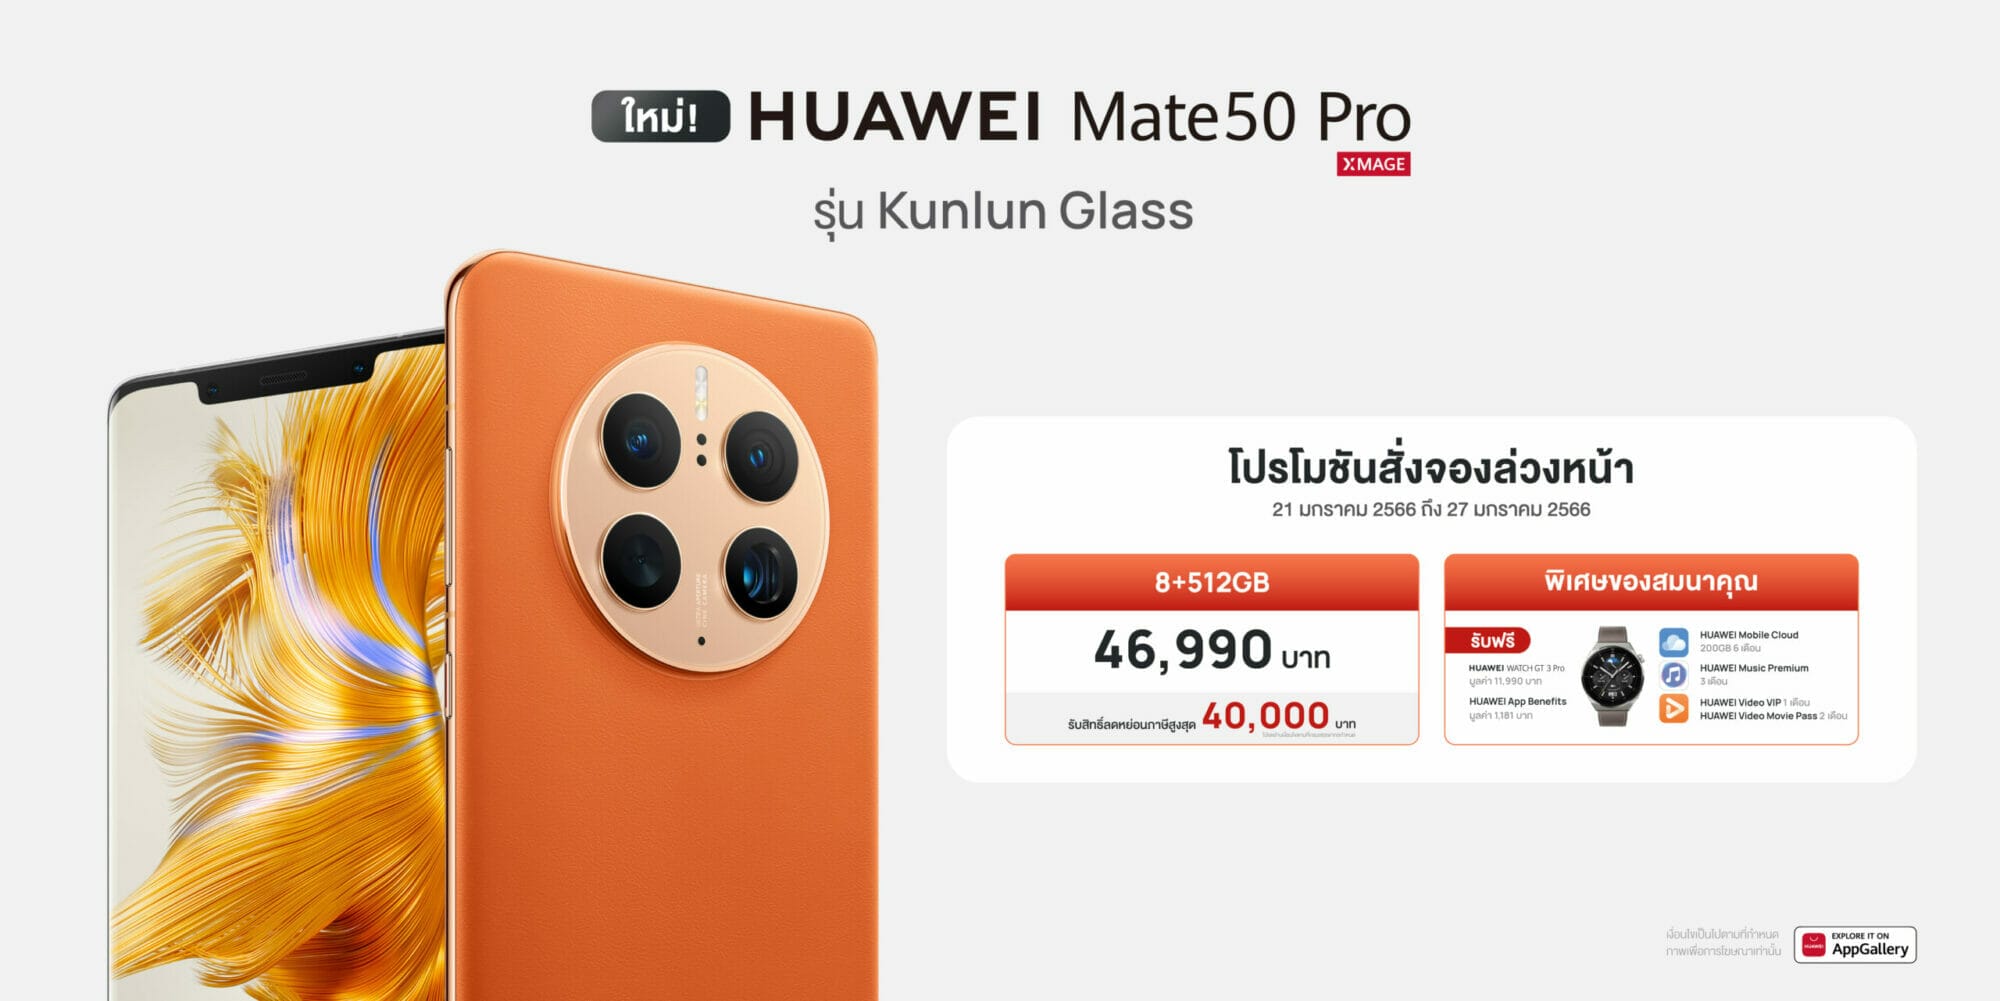 พรีออเดอร์วันนี้ HUAWEI Mate 50 Pro Kunlun Glass Edition รับฟรีของแถมพิเศษสูงสุด 13,171 บาท